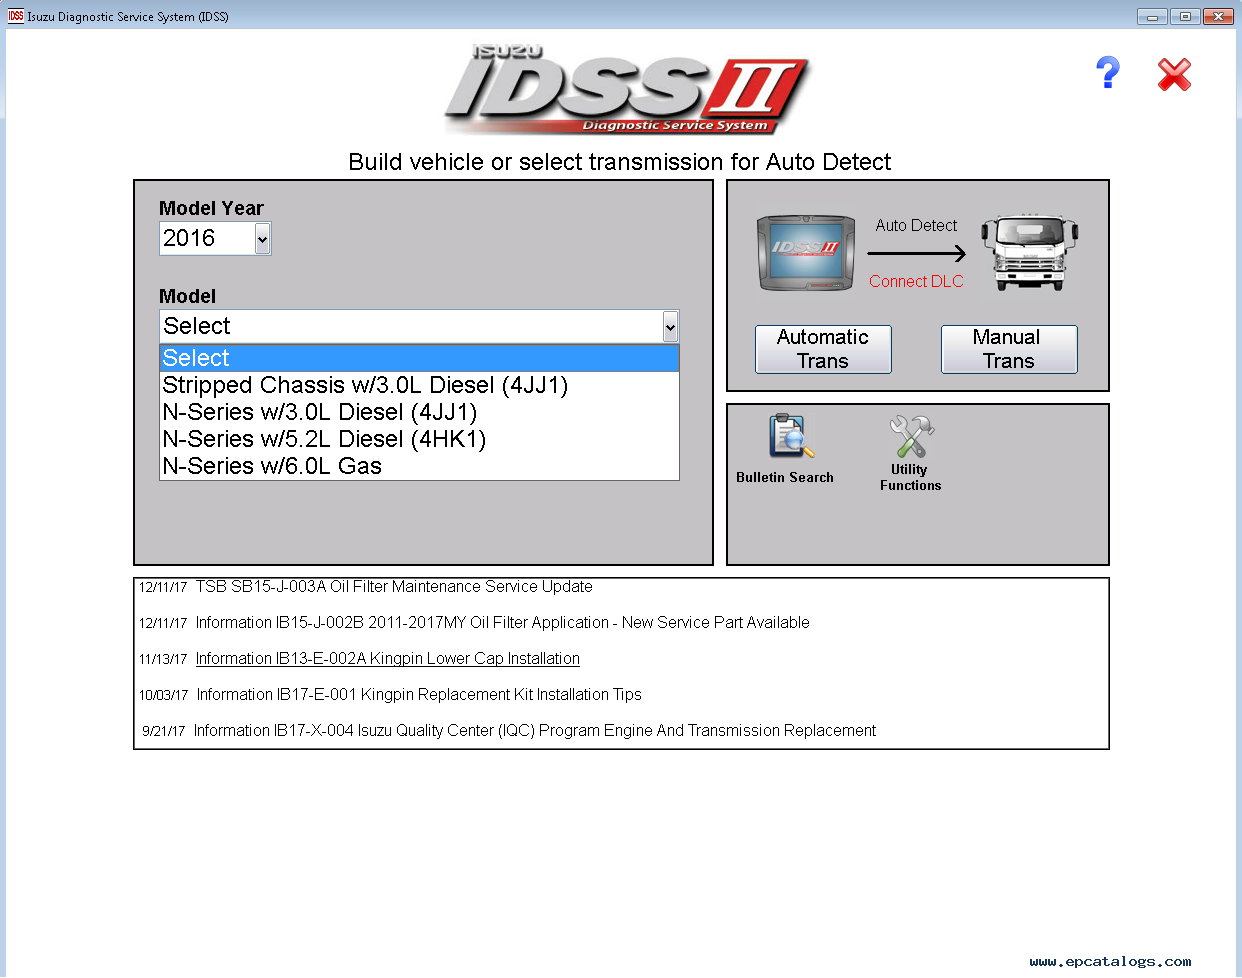 Isuzu IDSS Software Update